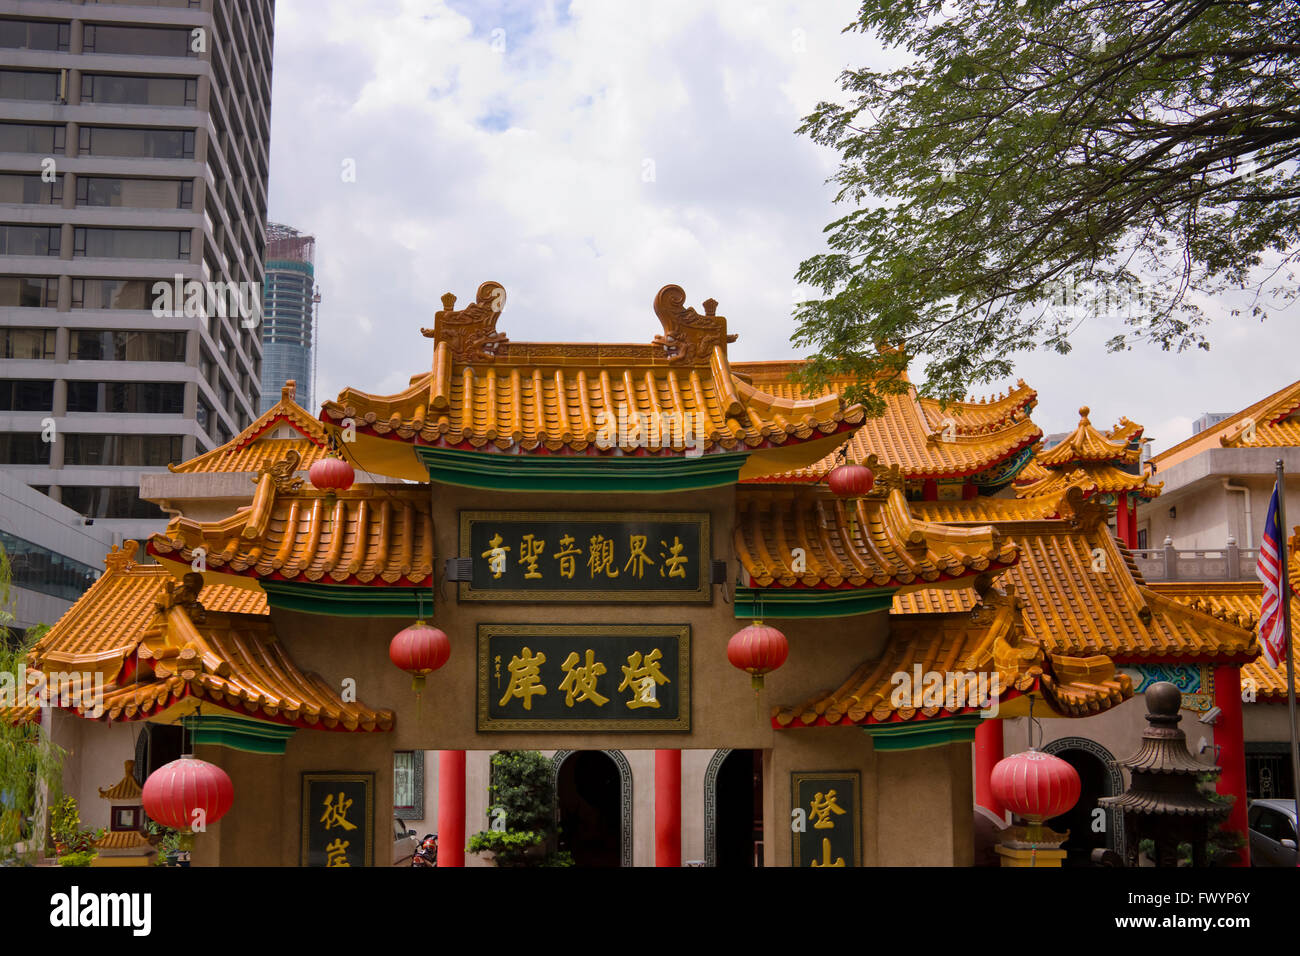 Chinese Temple, Kuala Lumpur, Malaysia Stock Photo